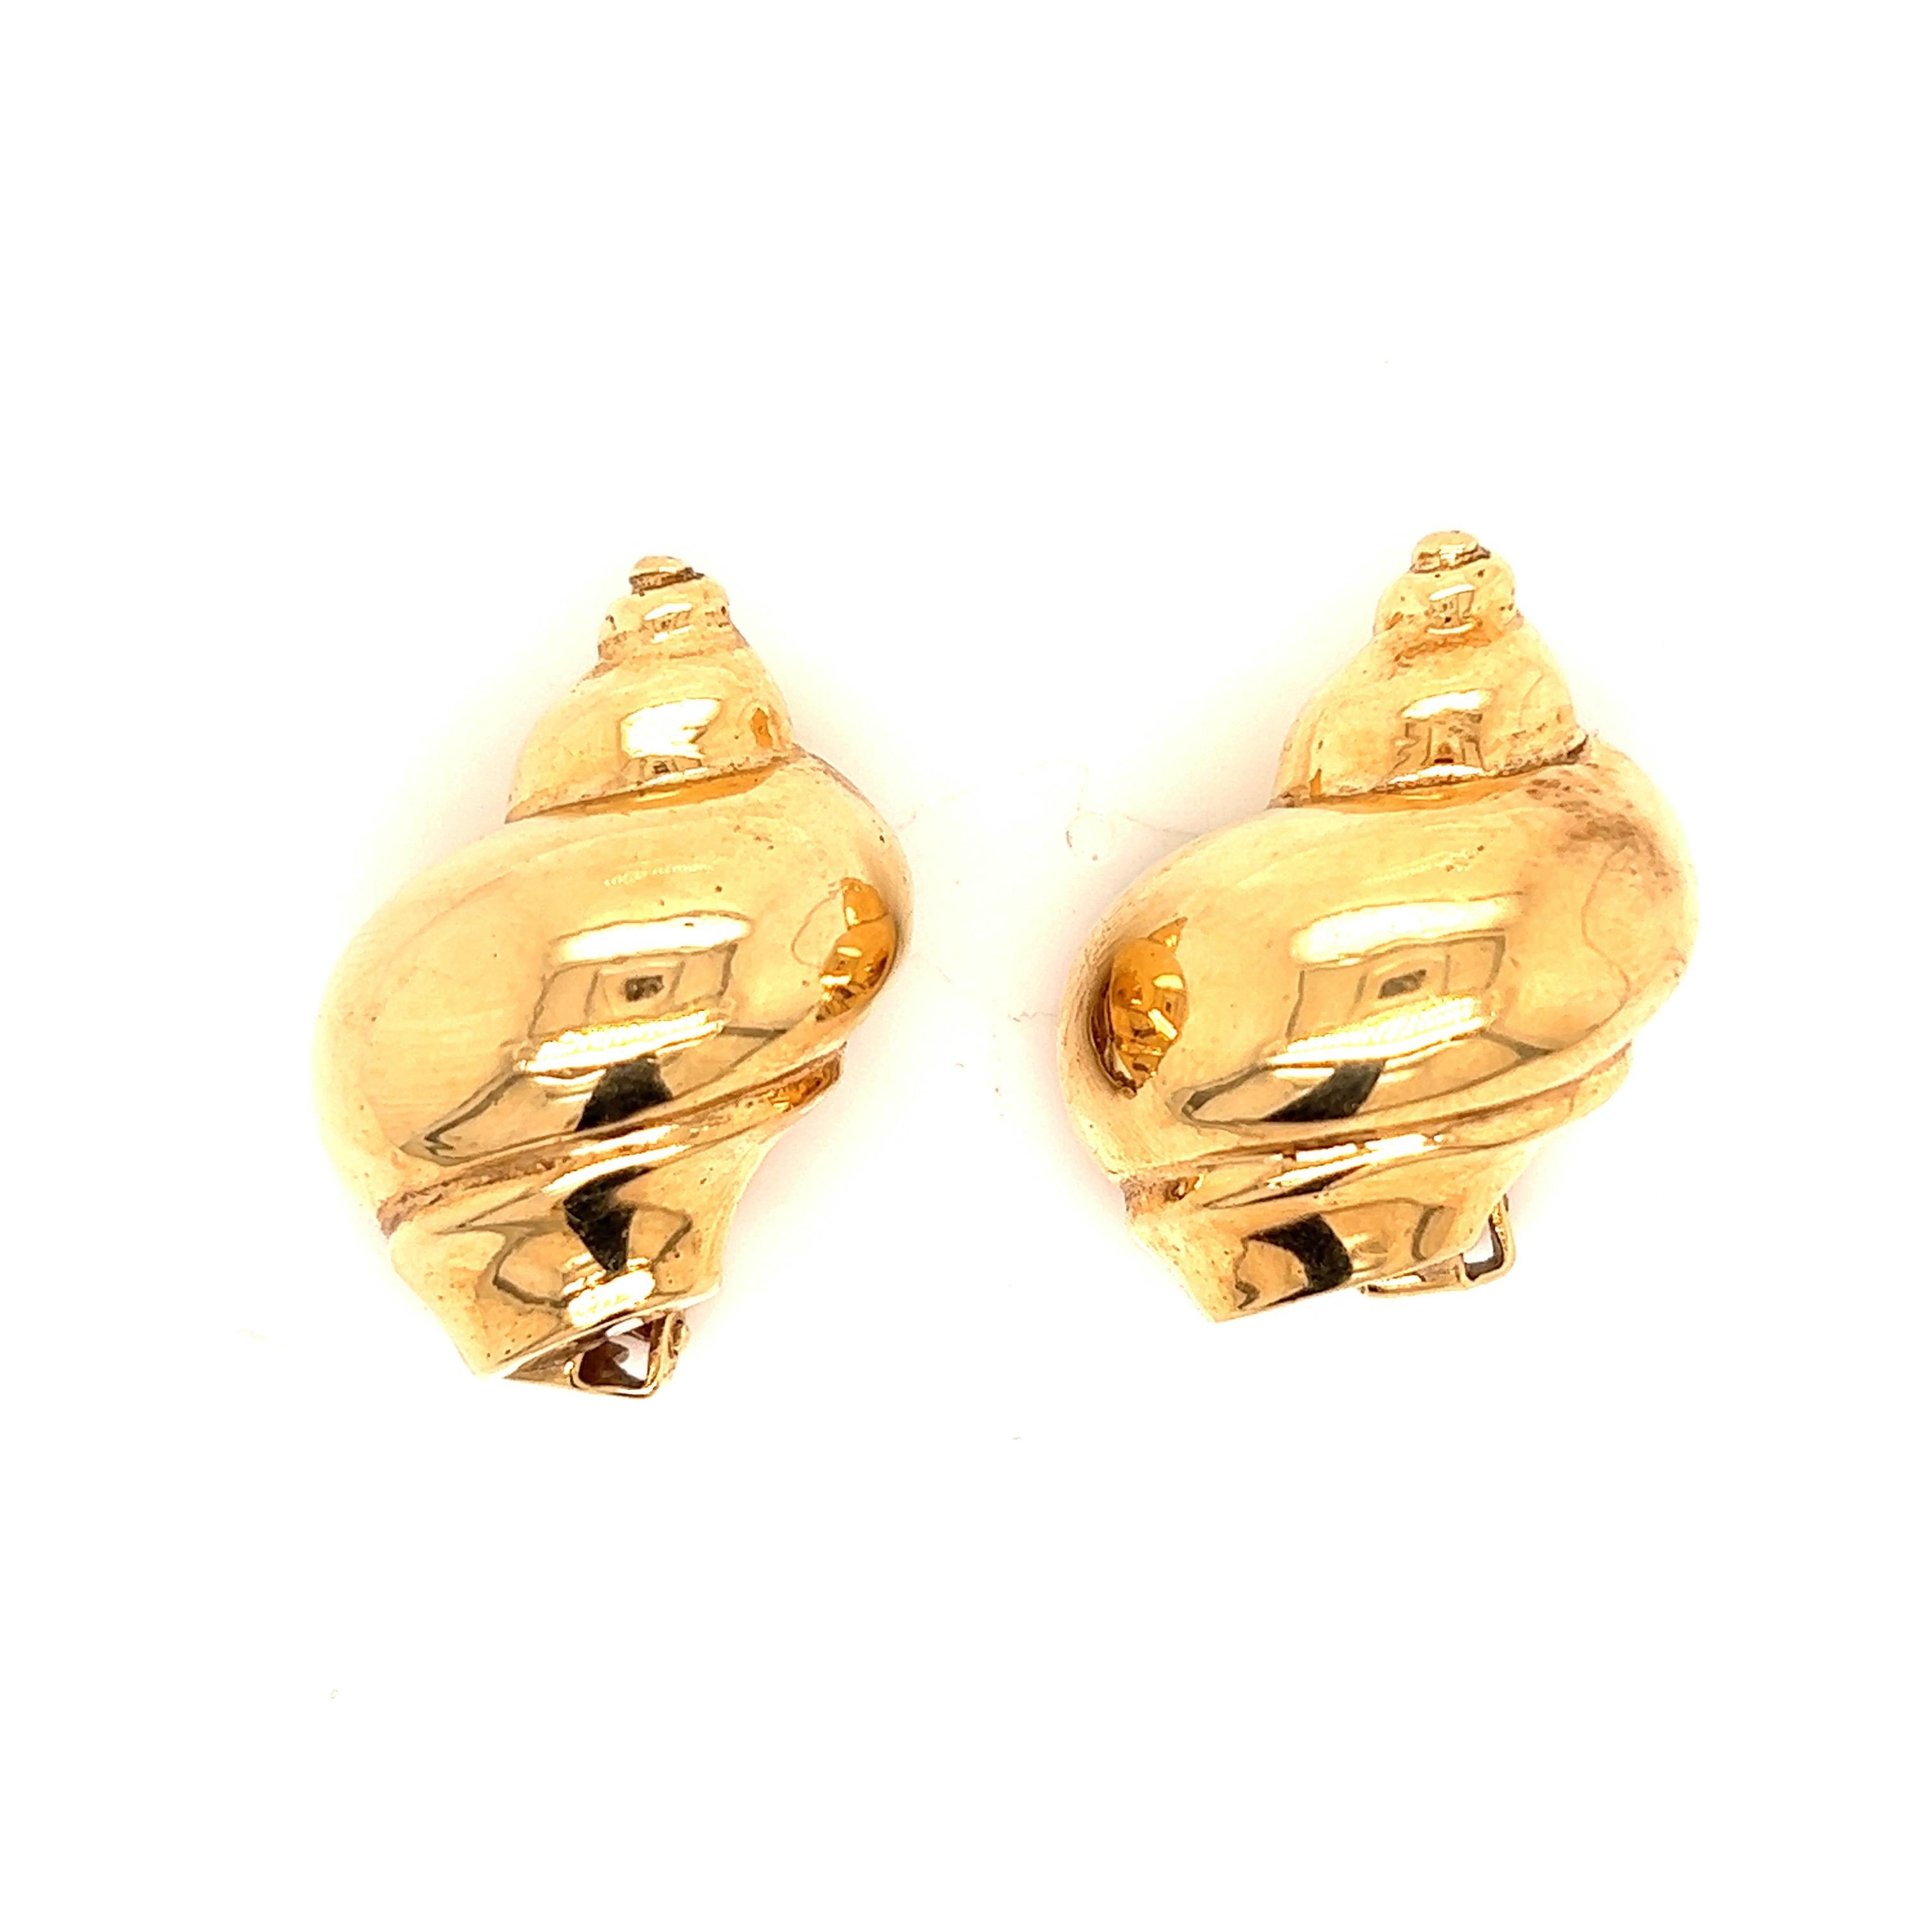 Seaman Schepps gold shell ear clips

Shell motif, 14 karat yellow gold; marked Seaman Schepps, 14k

Size: width 0.88 inch, length 1.13 inch
Total weight: 38.7 grams